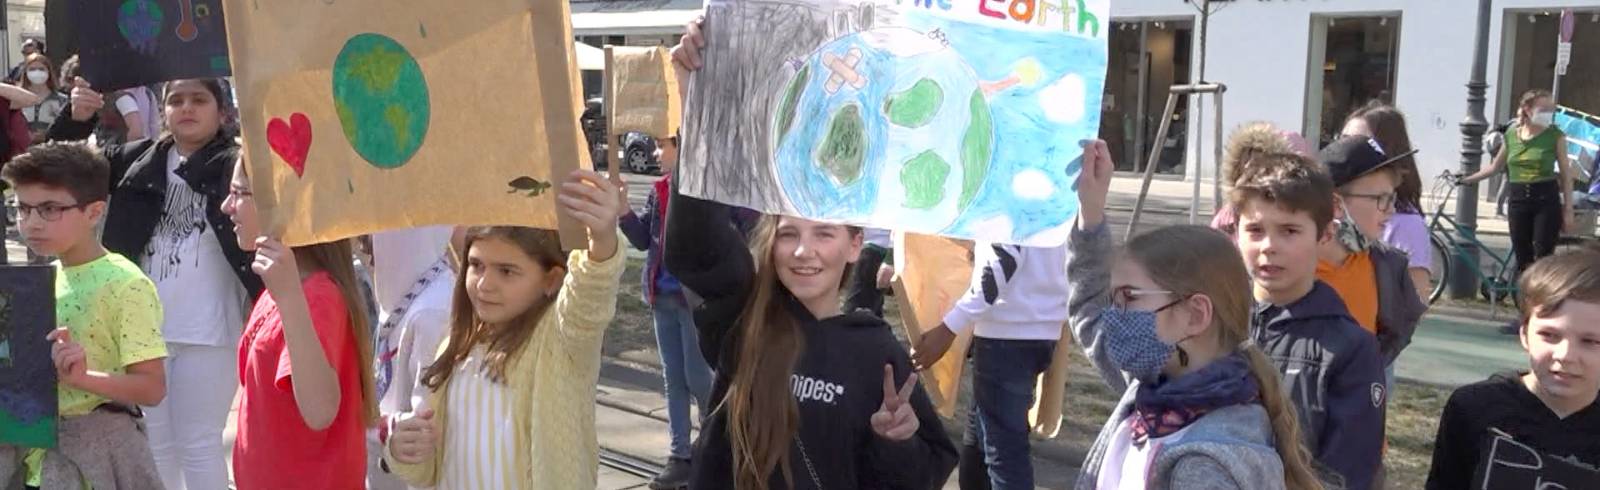 Fridays for Future: Streiken für das Klima